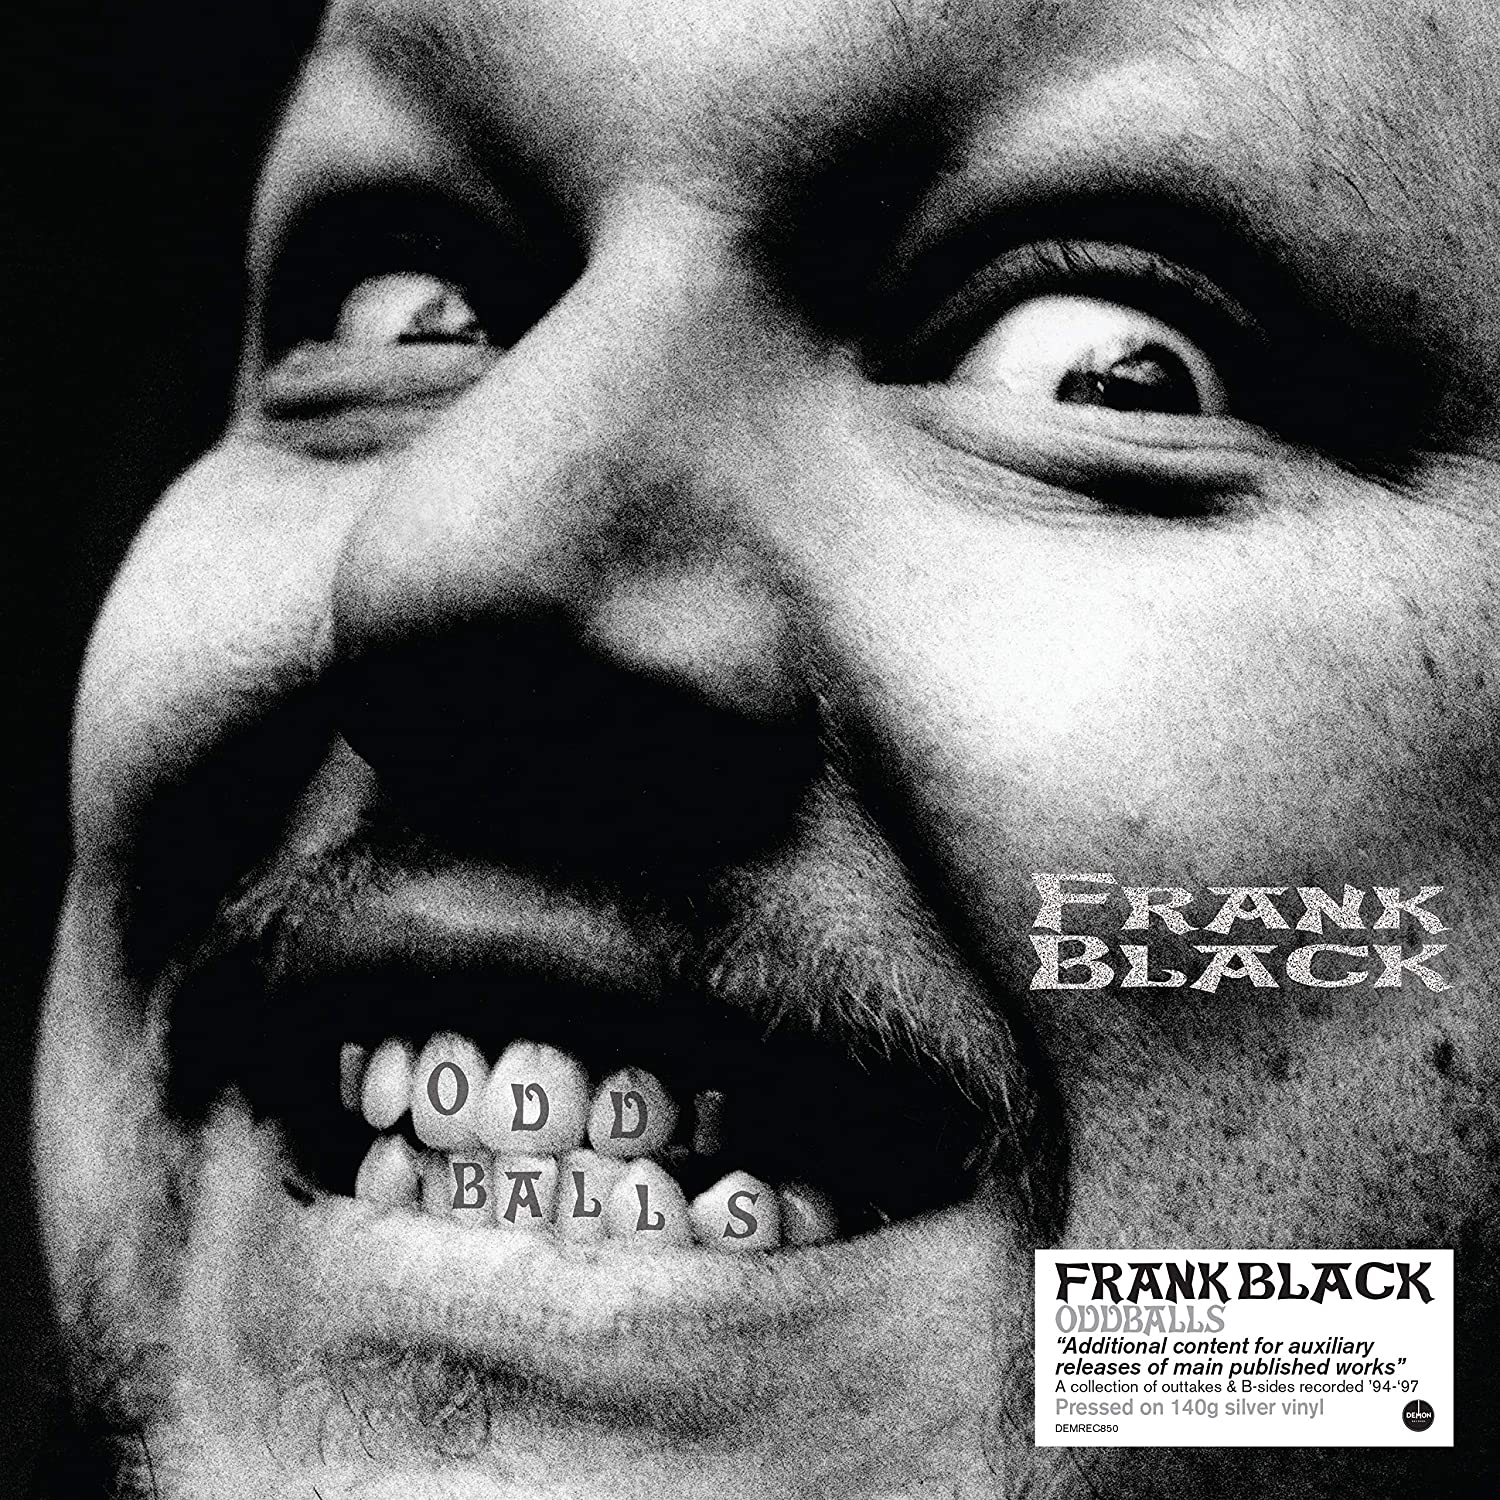 Frank Black Oddballs Vinyl